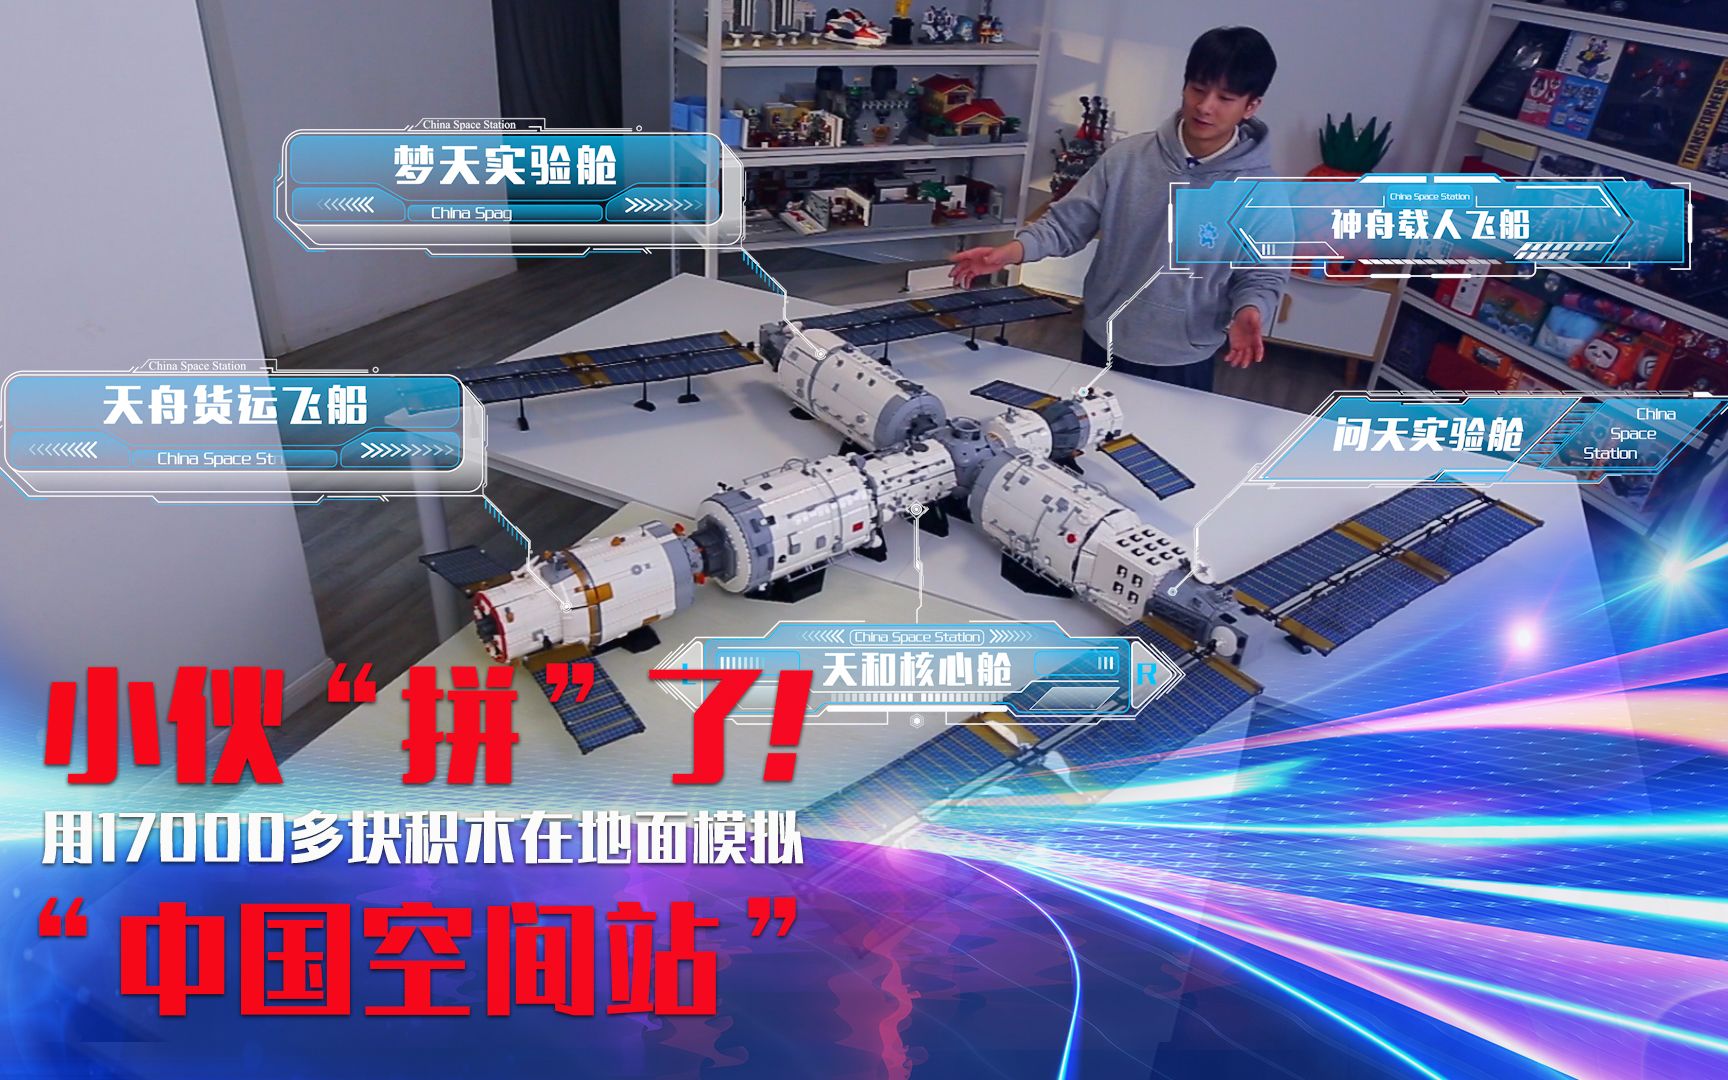 他用17000块积木在地面模拟“中国空间站”